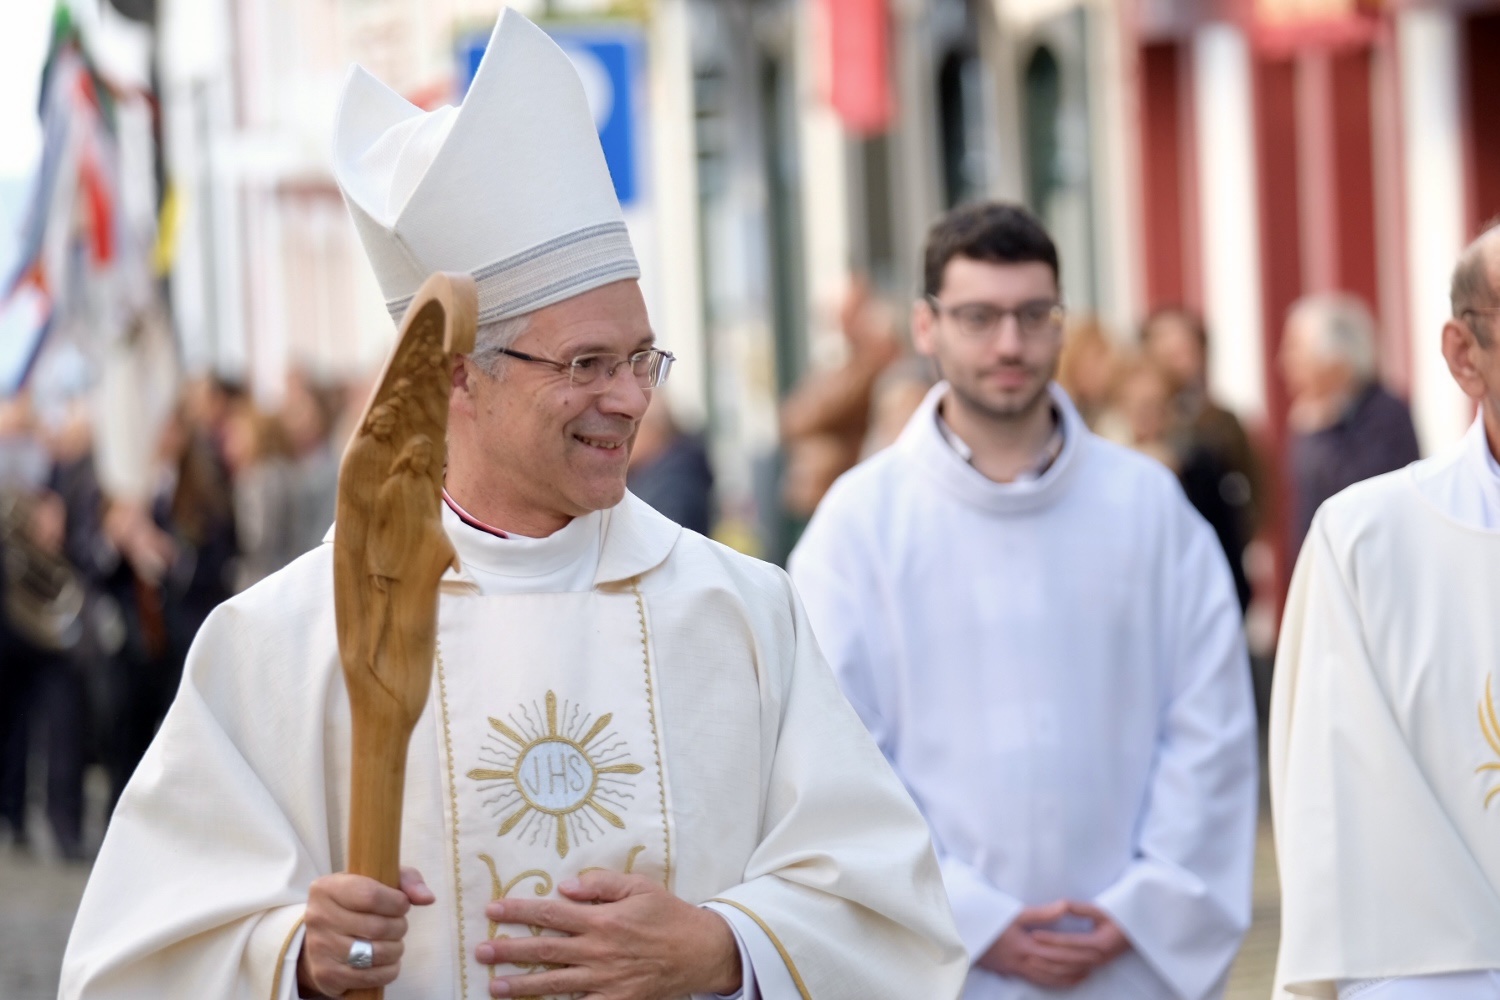 Açores: Diocese de Angra prepara-se para receber novo bispo